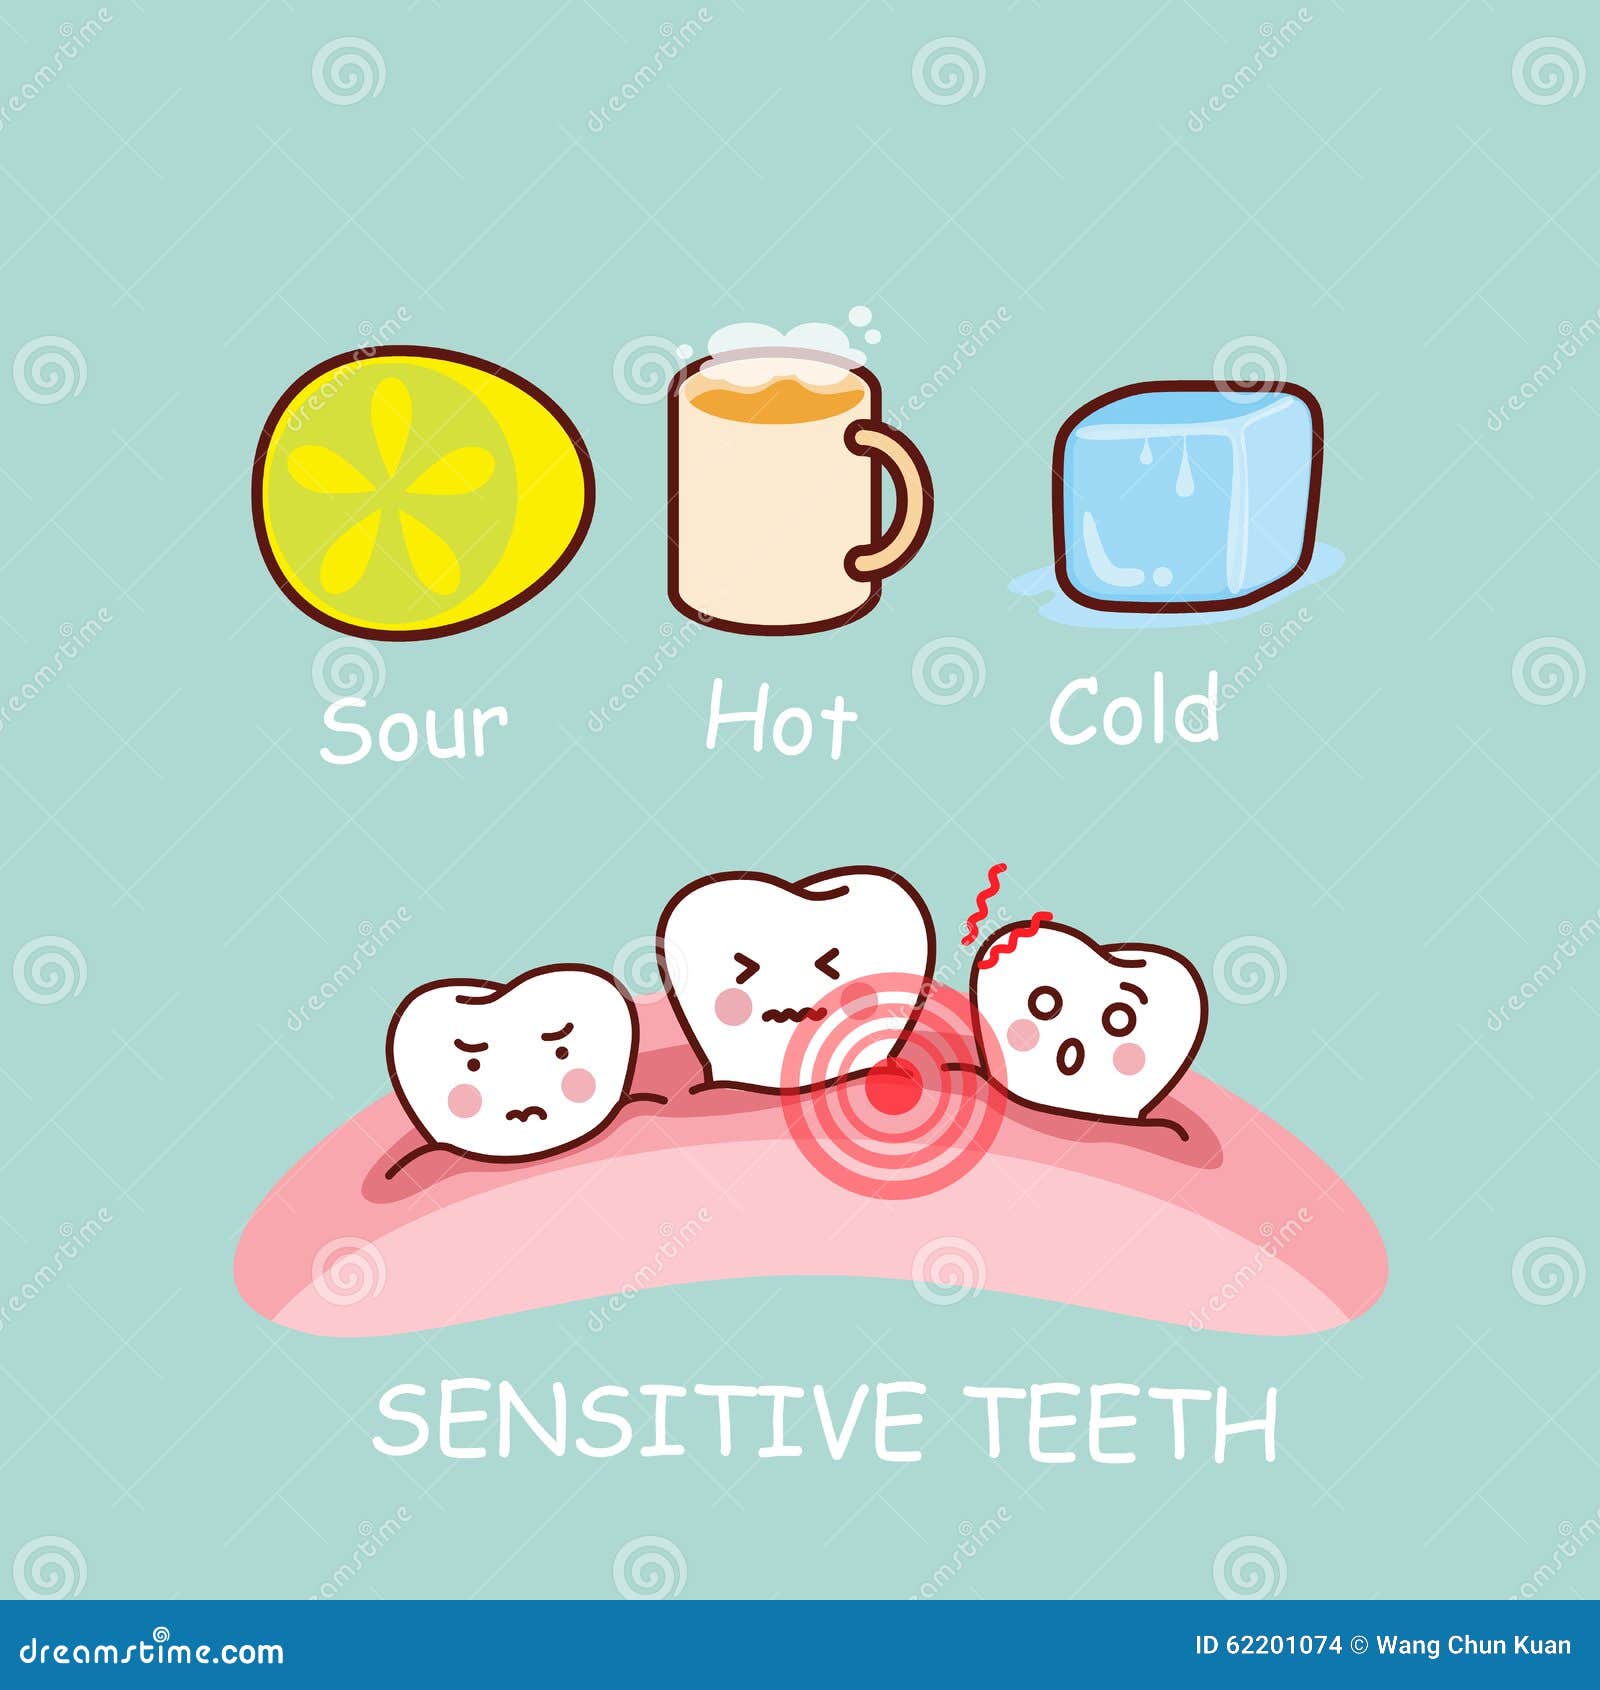 Cartoon sensitivity tooth stock vector. Illustration of dentistry - 62201074